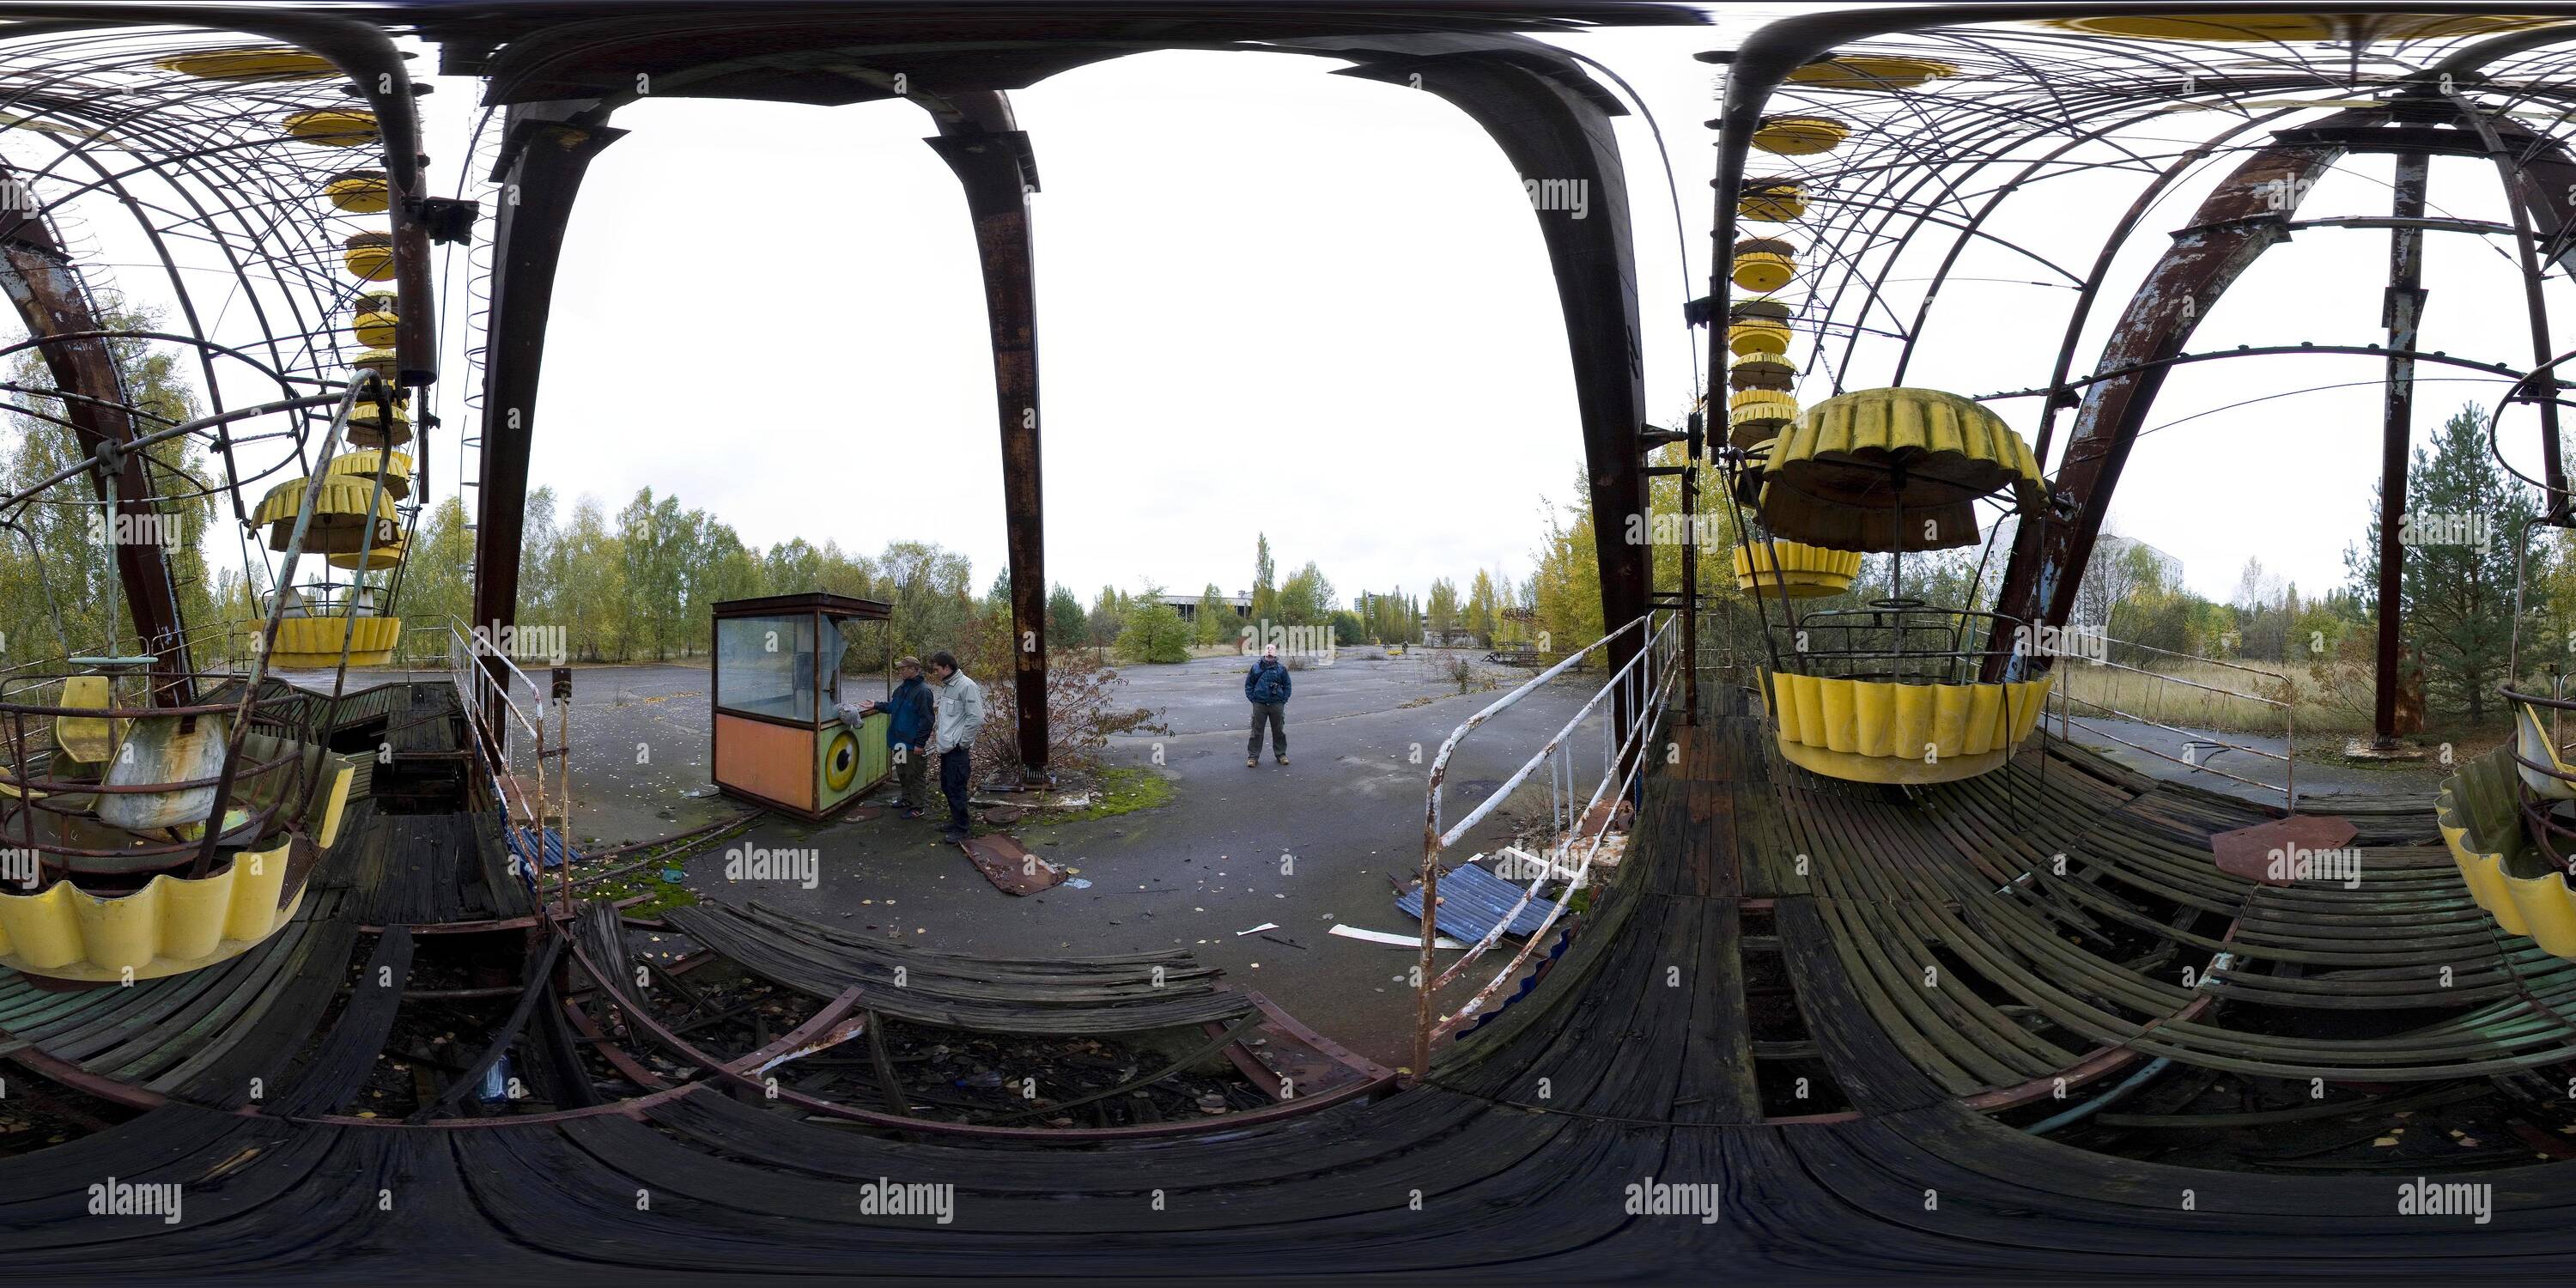 360 degree panoramic view of CHERNOBYL - Ferris wheel